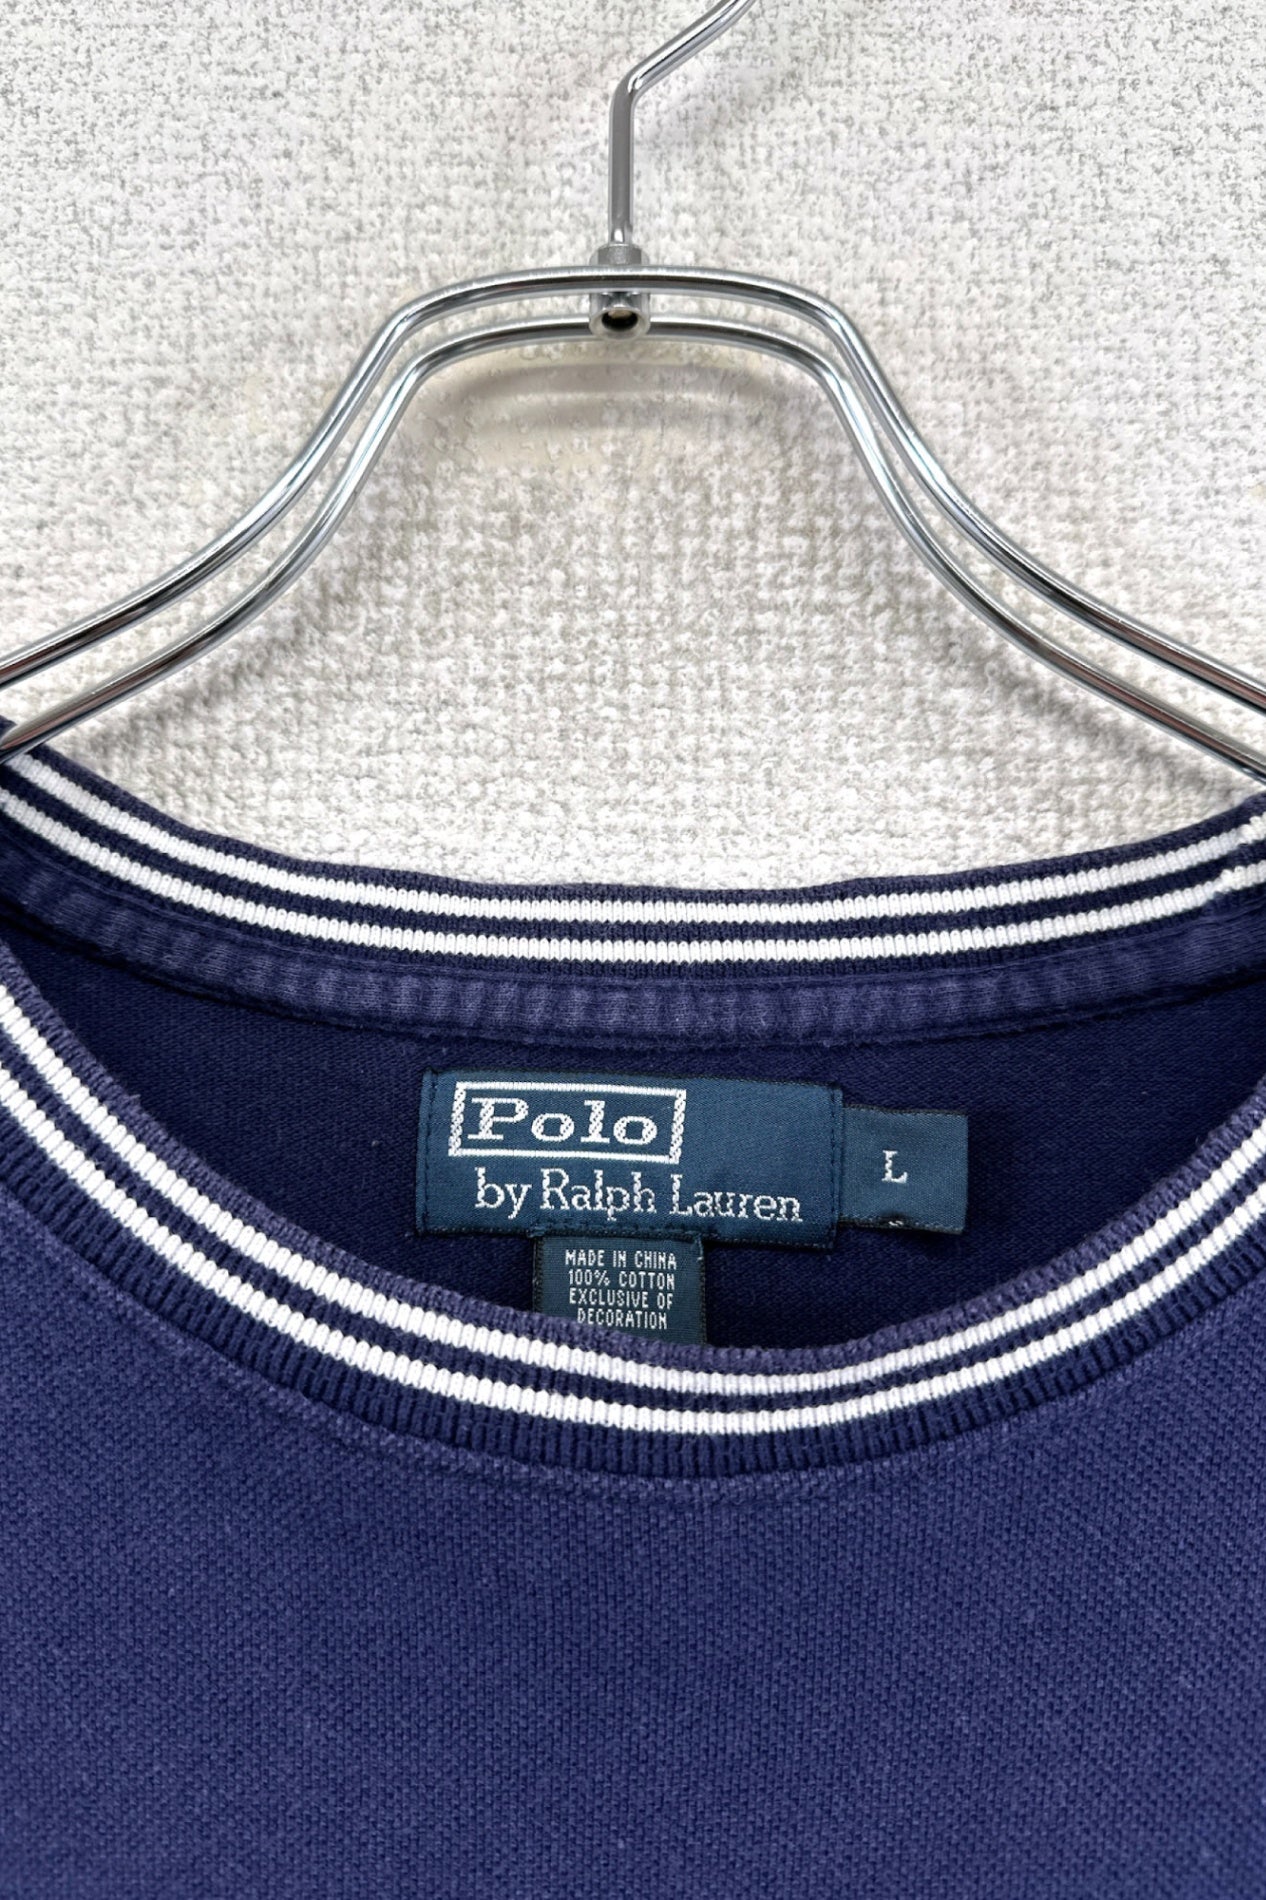 90's Polo by Ralph Lauren T-shirt